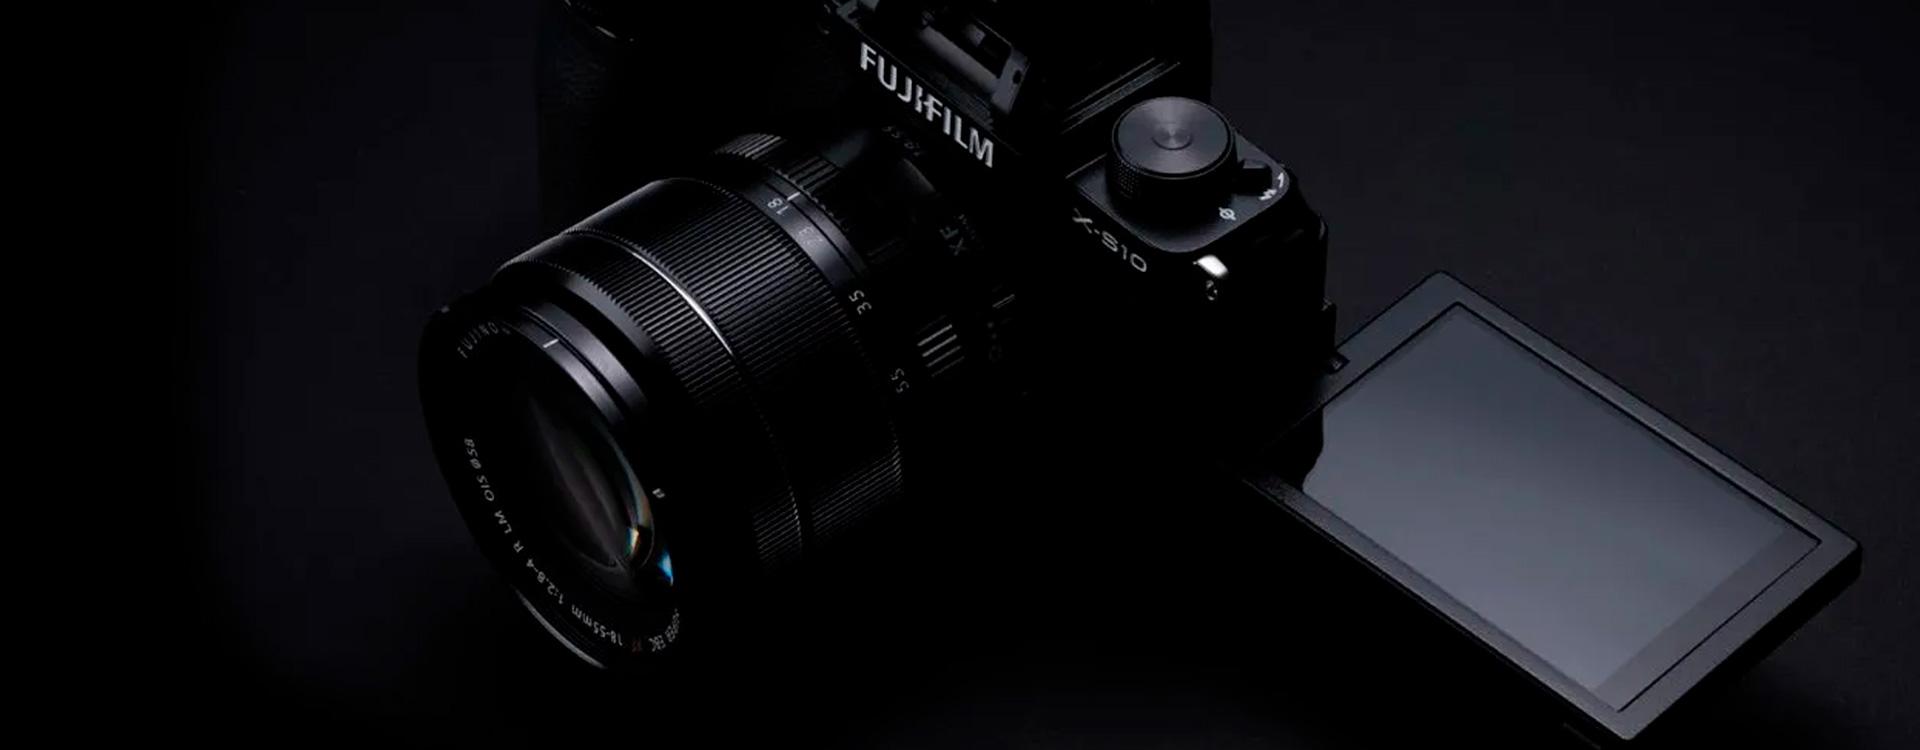 Diferencias Fujifilm X-S10 Vs Fuji X-T4 Vs Fuji X-T3 Comparativa de características